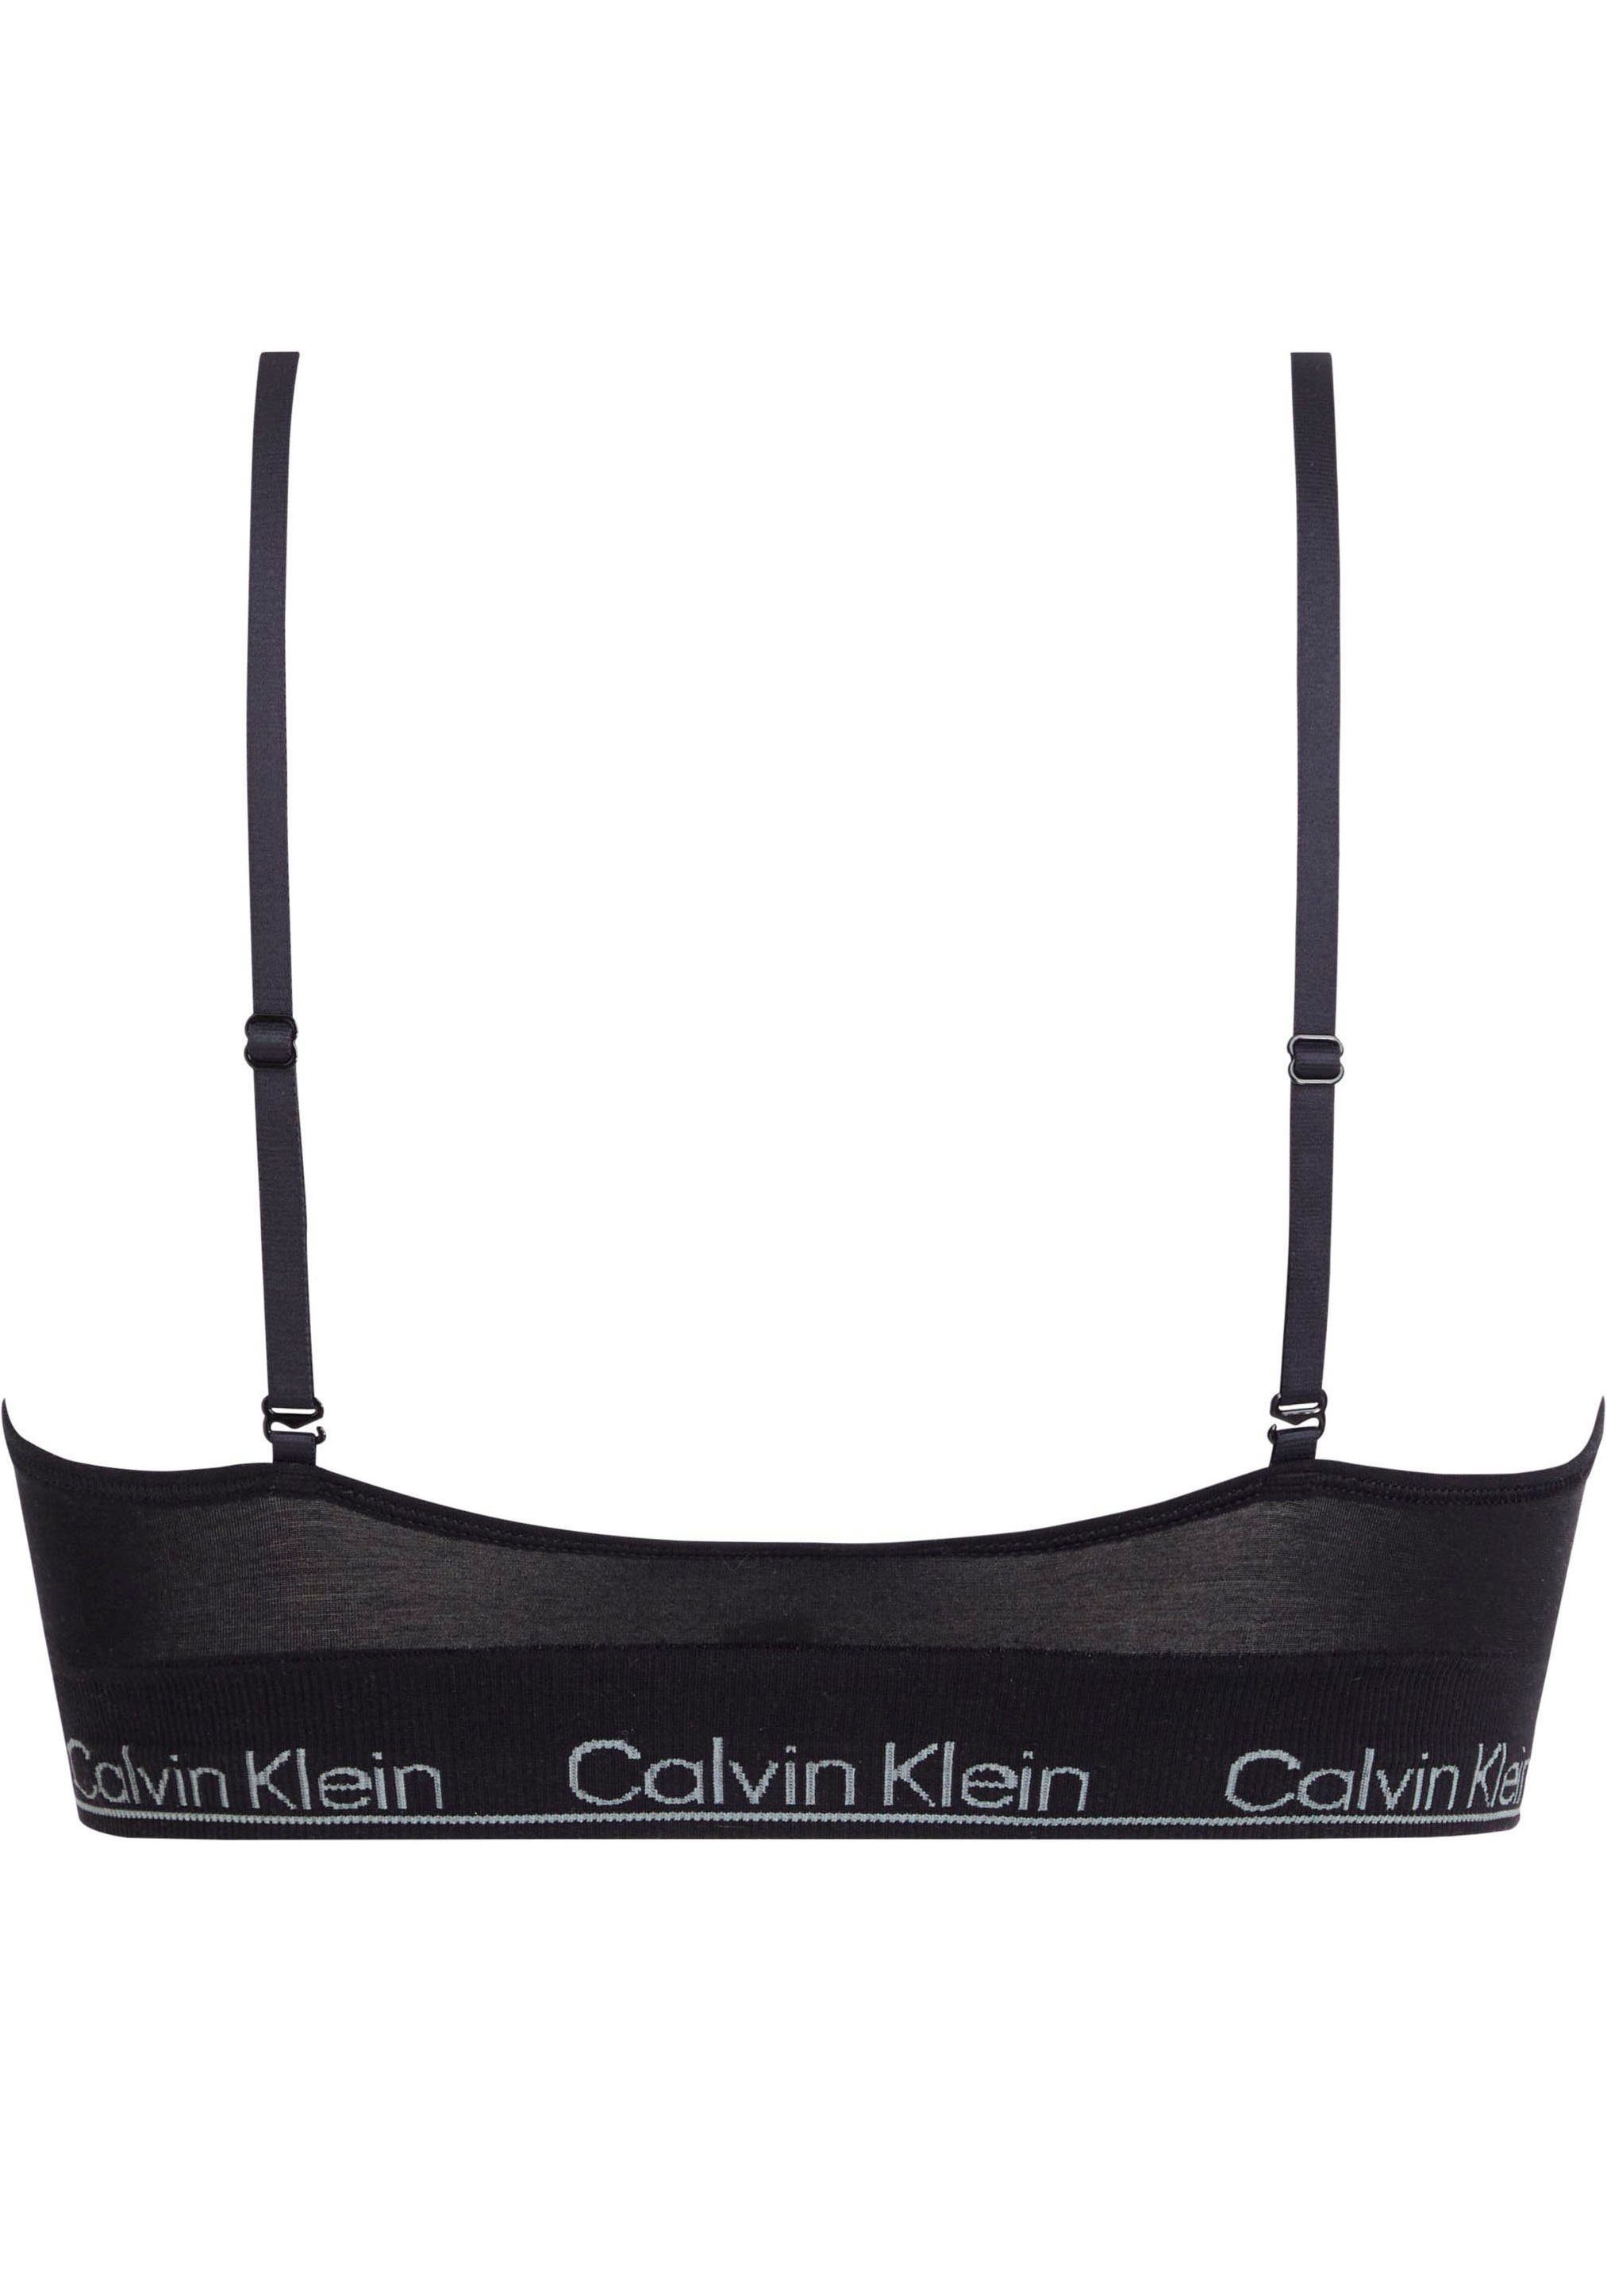 Calvin Klein Underwear TRIANGLE CK-Logoschriftzug LINED Triangel-BH schwarz LGHT mit